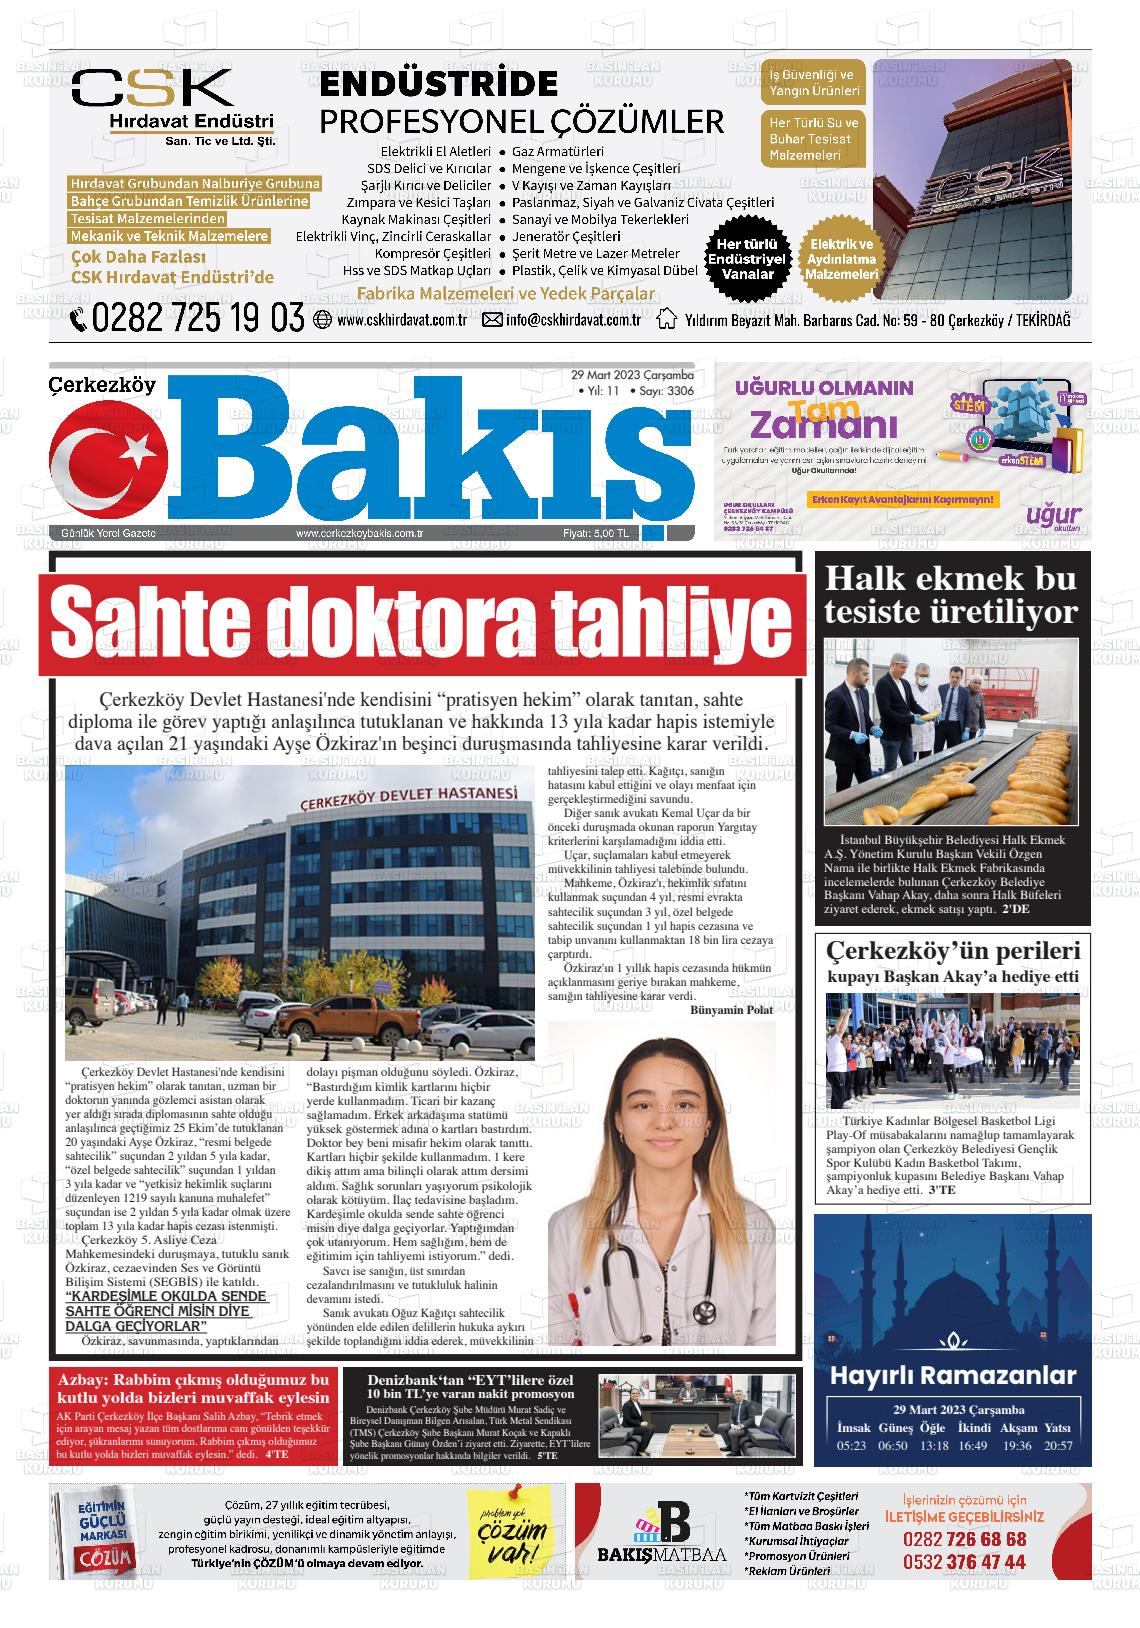 29 Mart 2023 Çerkezköy Bakış Gazete Manşeti